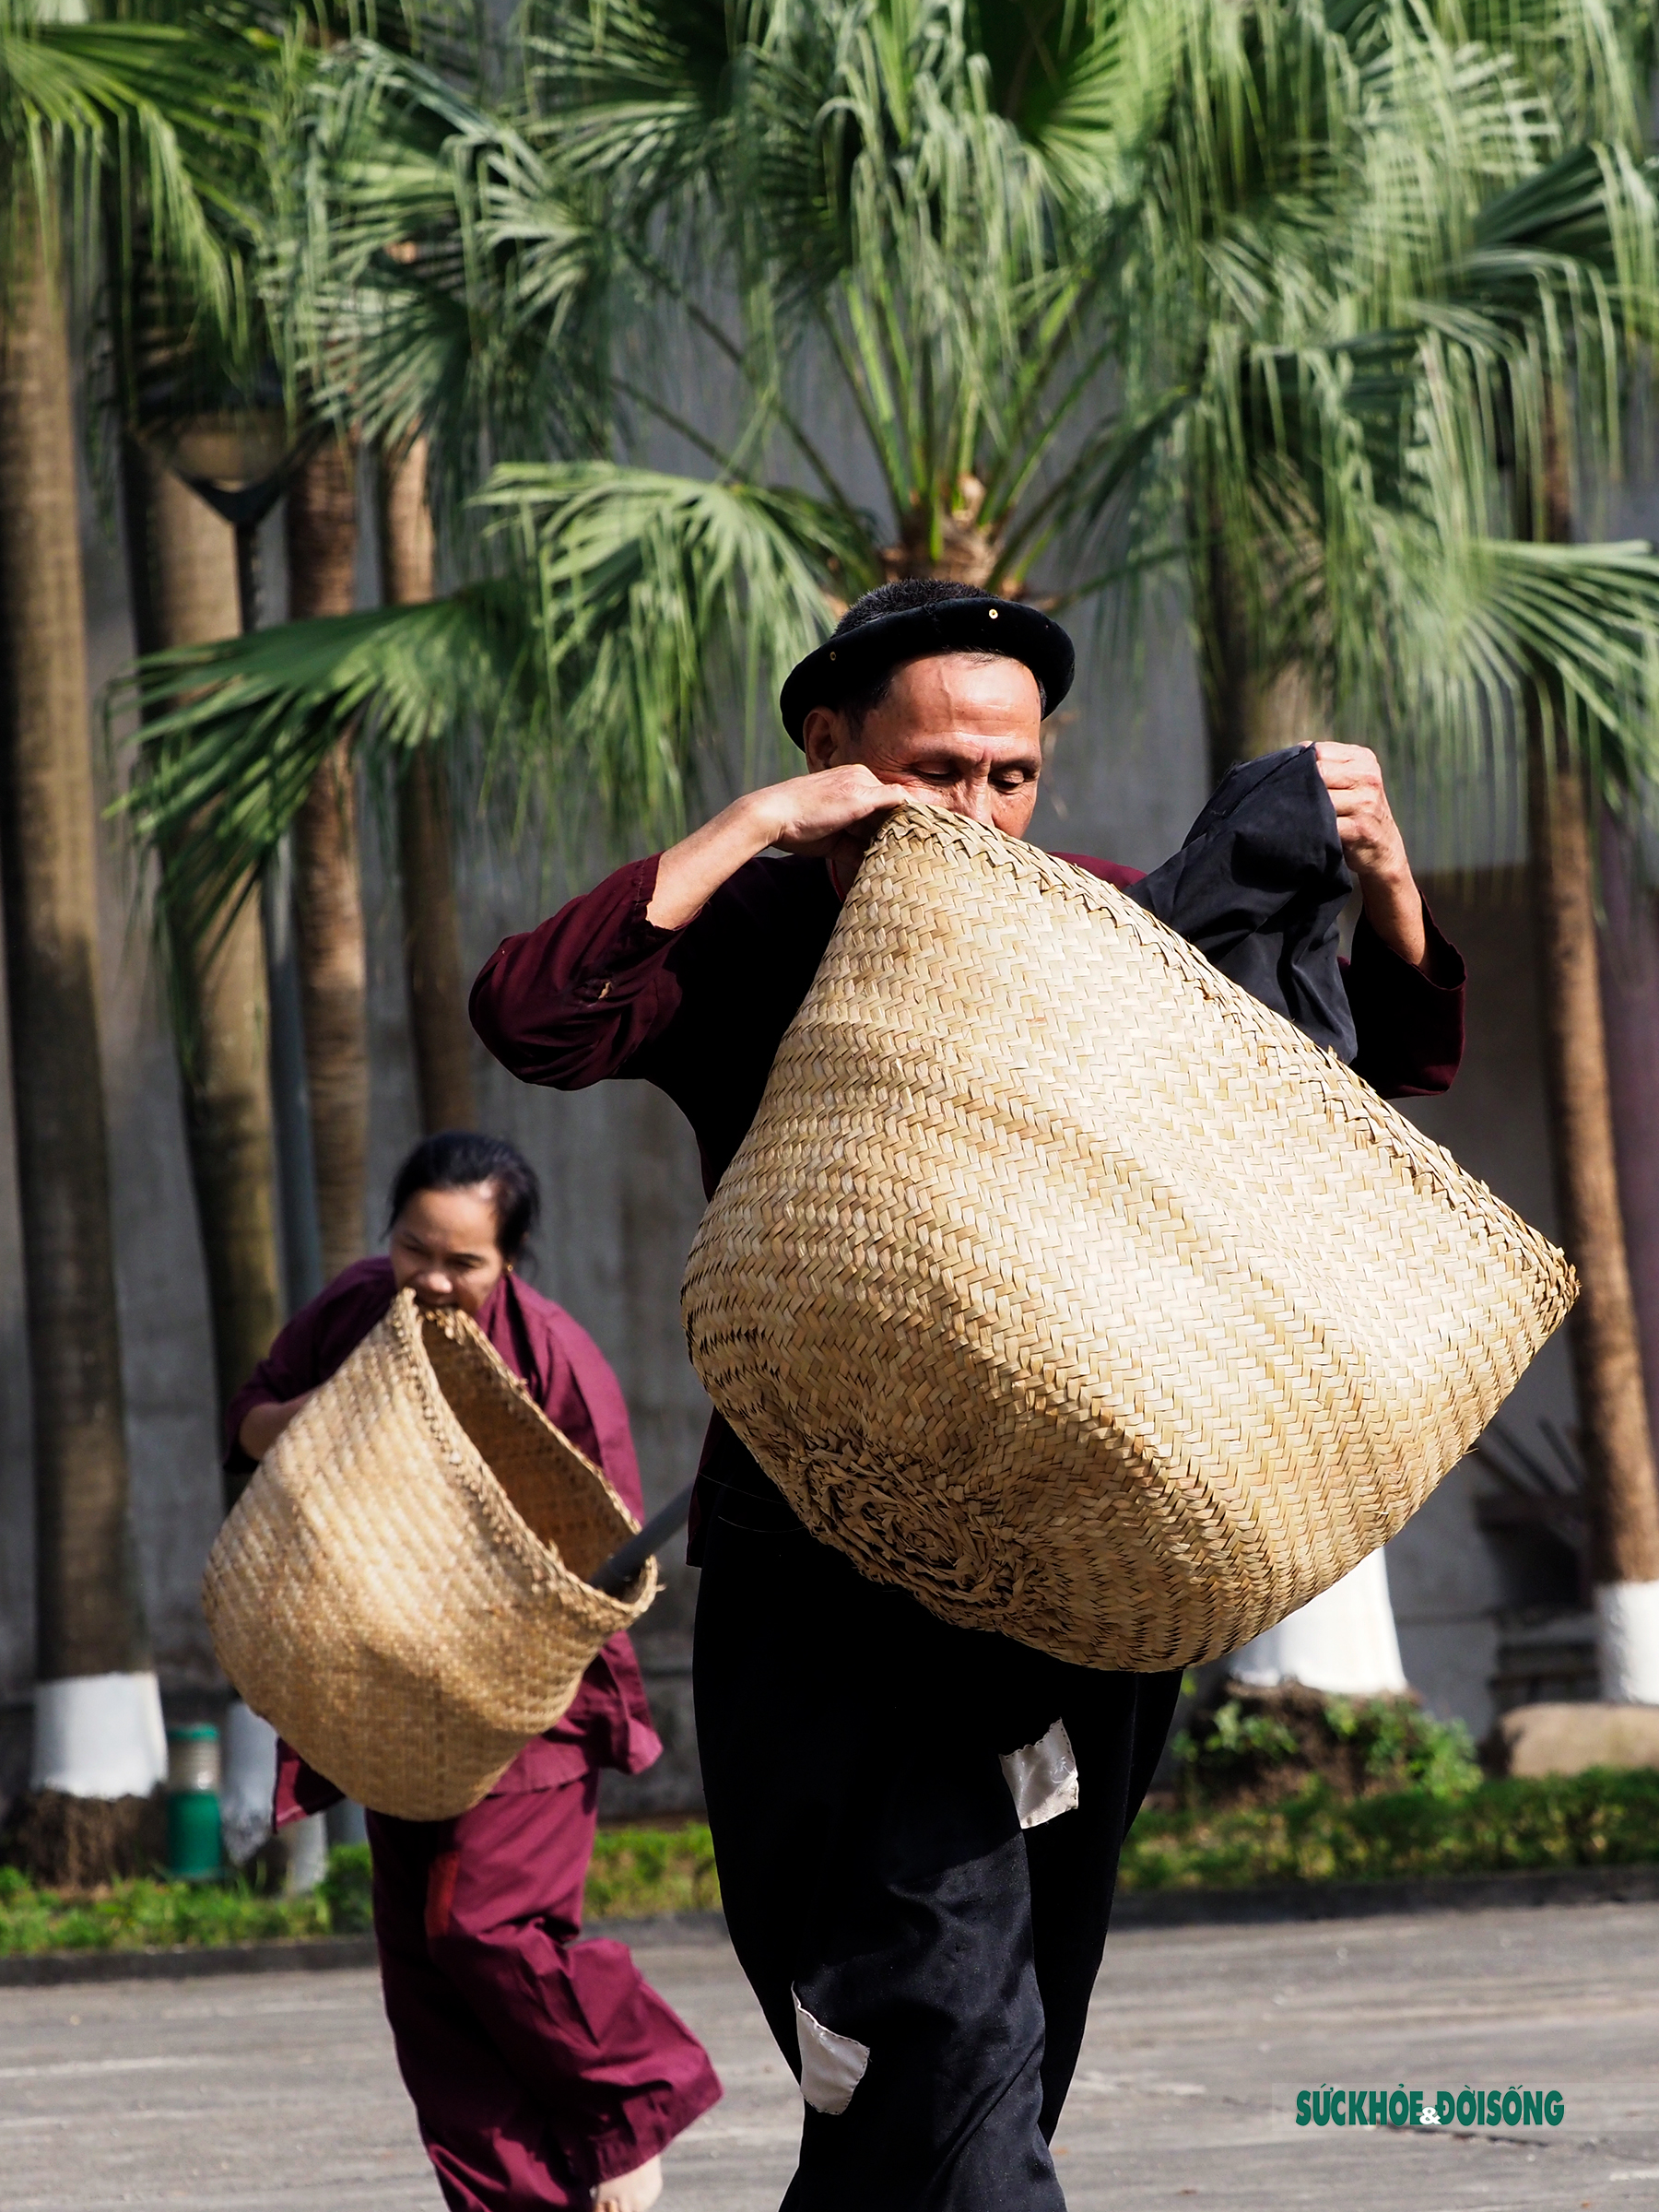 Chạy Ró làng Guột - Trò chơi dân gian đậm nét văn hóa vùng Kinh Bắc  - Ảnh 7.